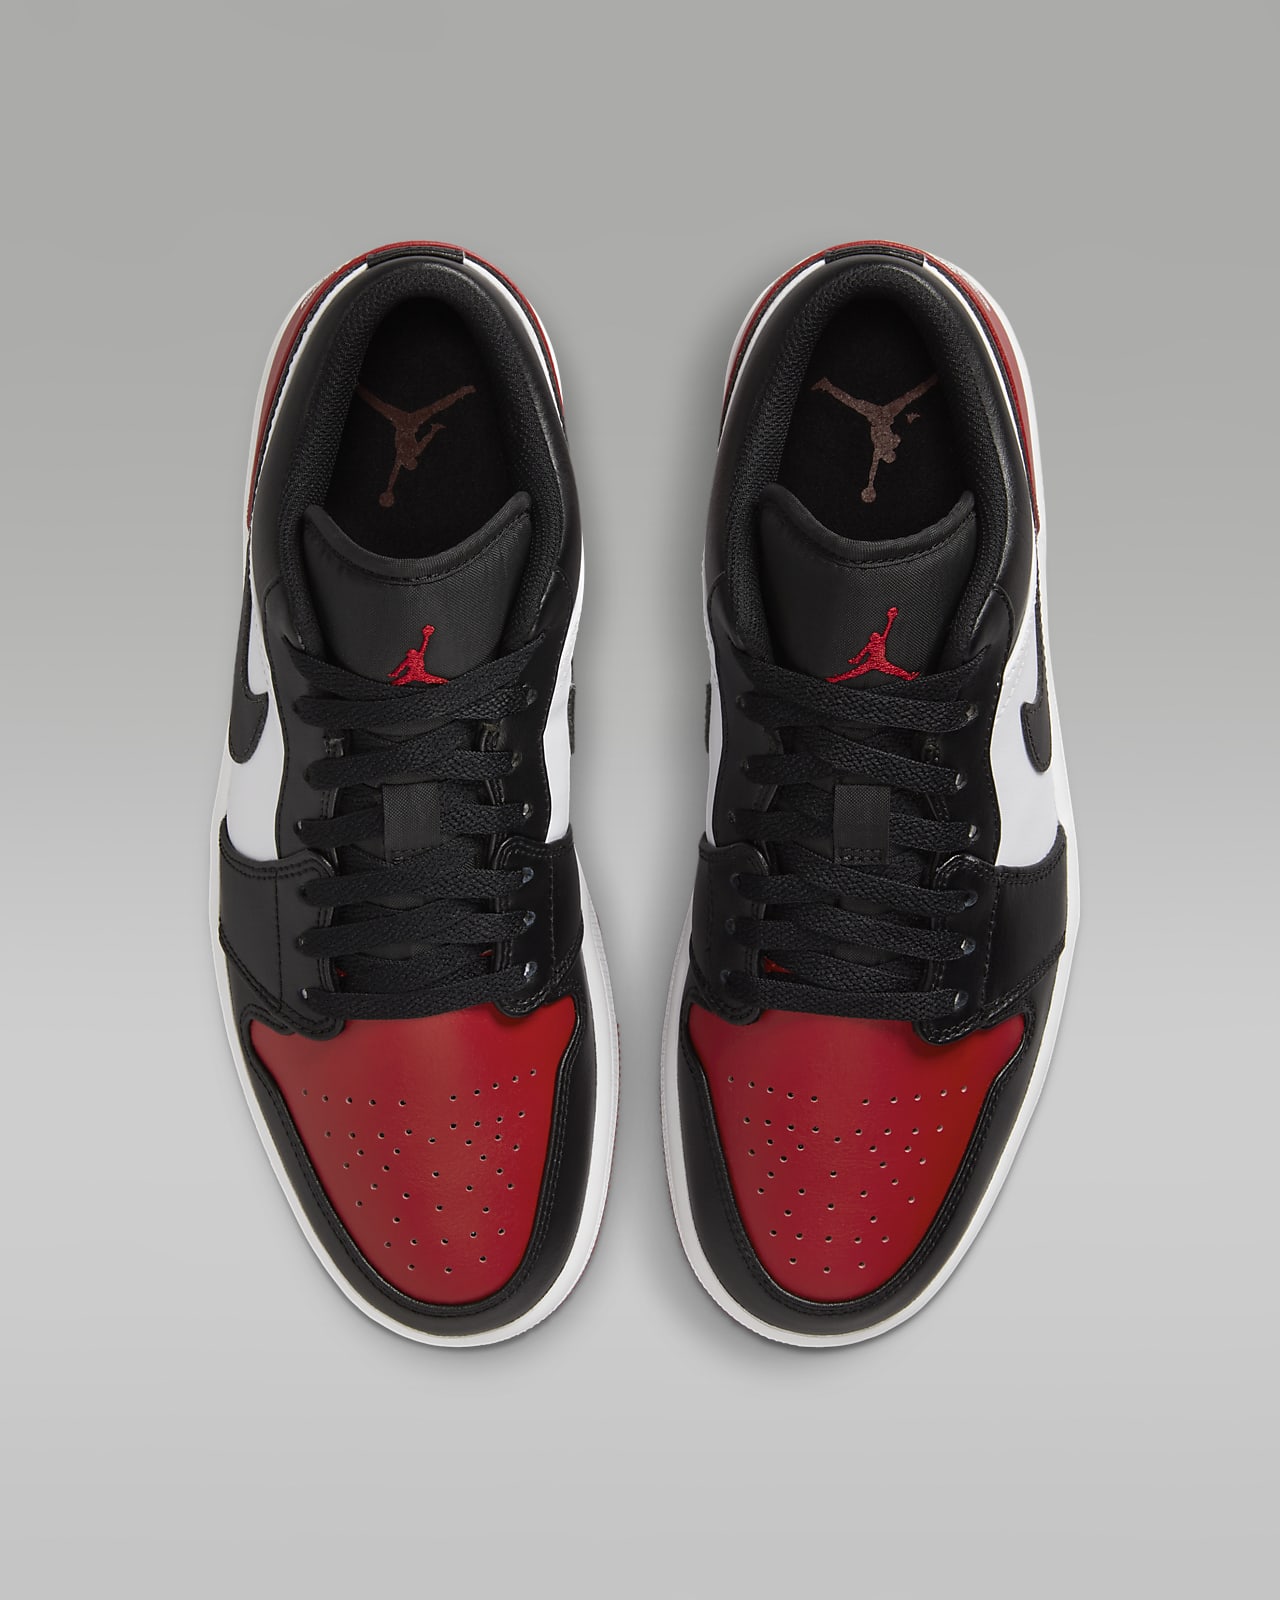 Nike Jordan Air 1 Low sneakers in black and red